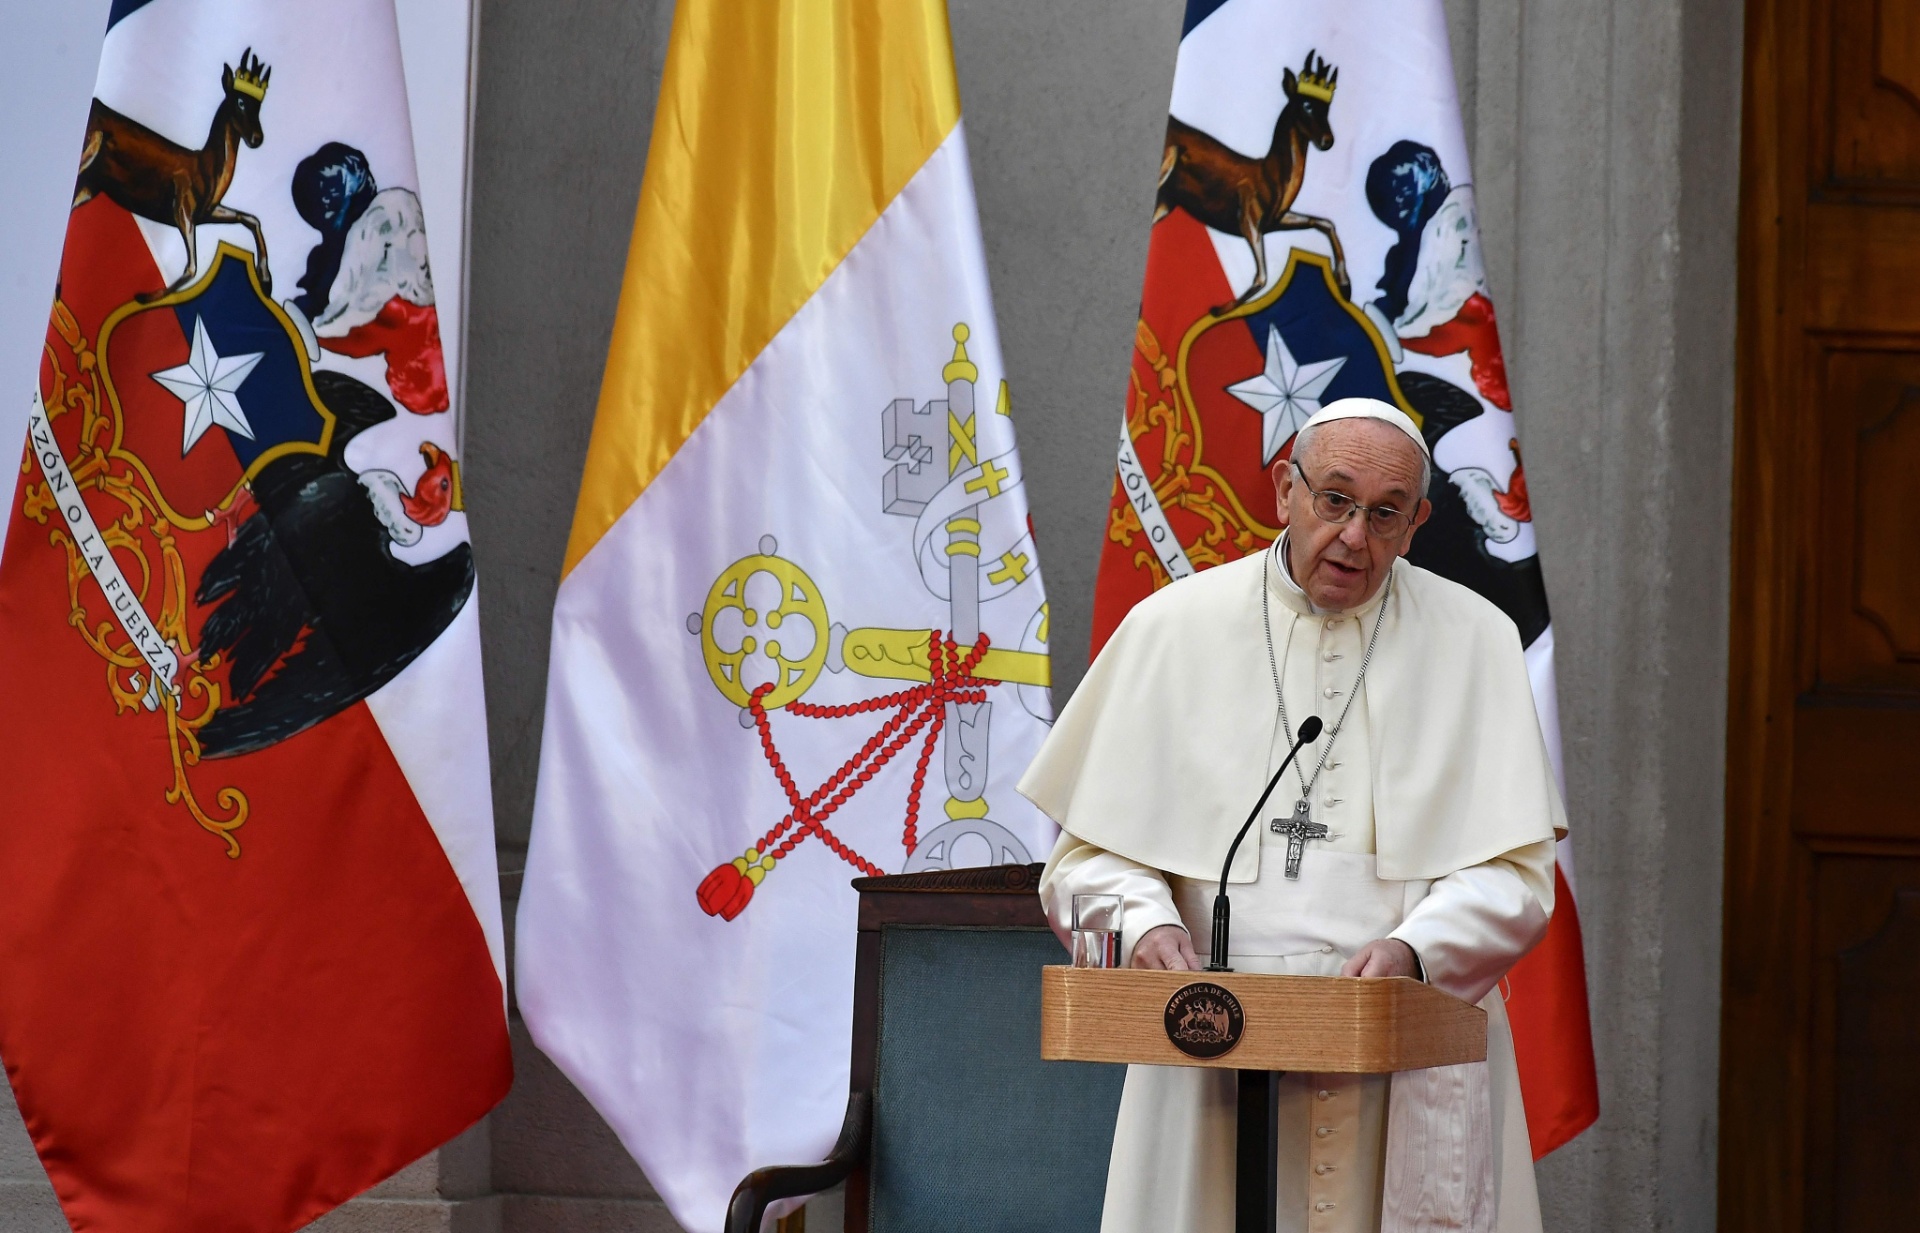 Fotos: Visita do papa Francisco ao Chile - 16/01/2018 - UOL Notícias